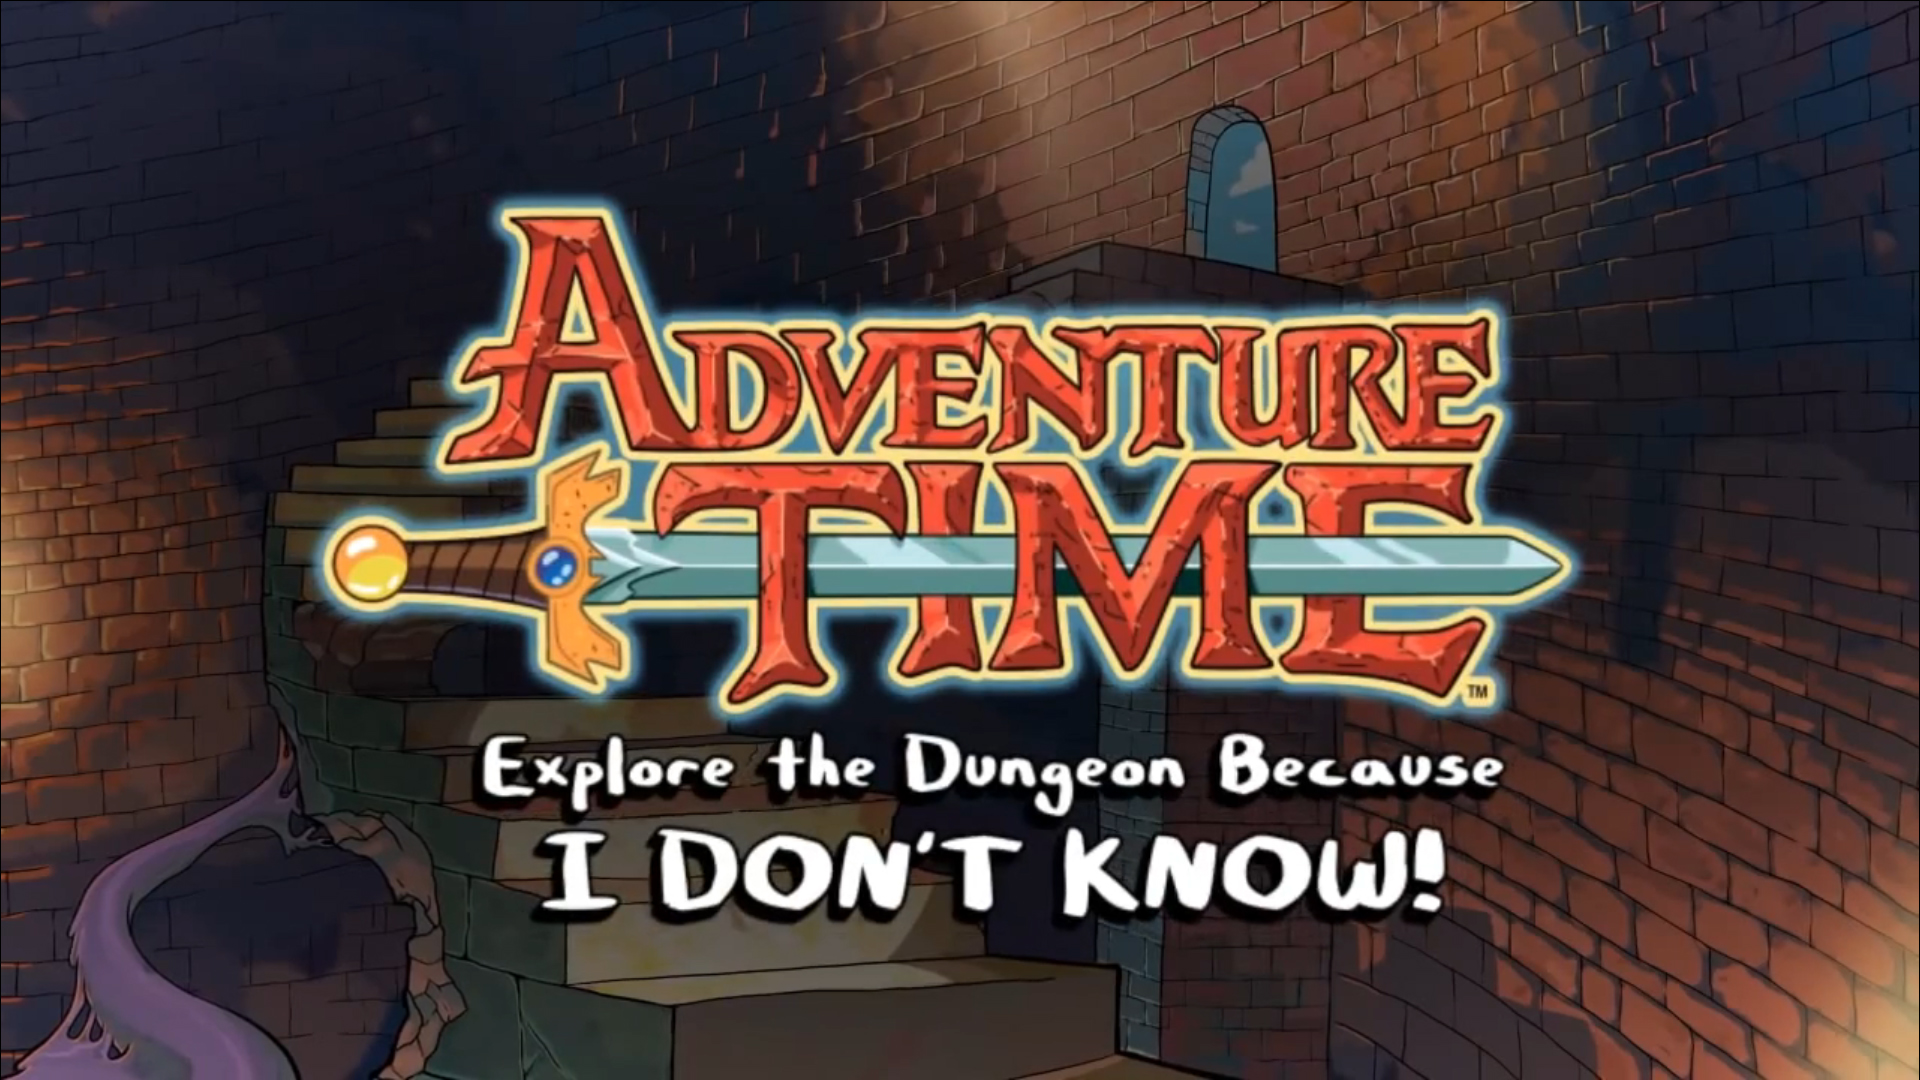 Fun and adventure await you underground in Adventure Time: ETDBIDK!